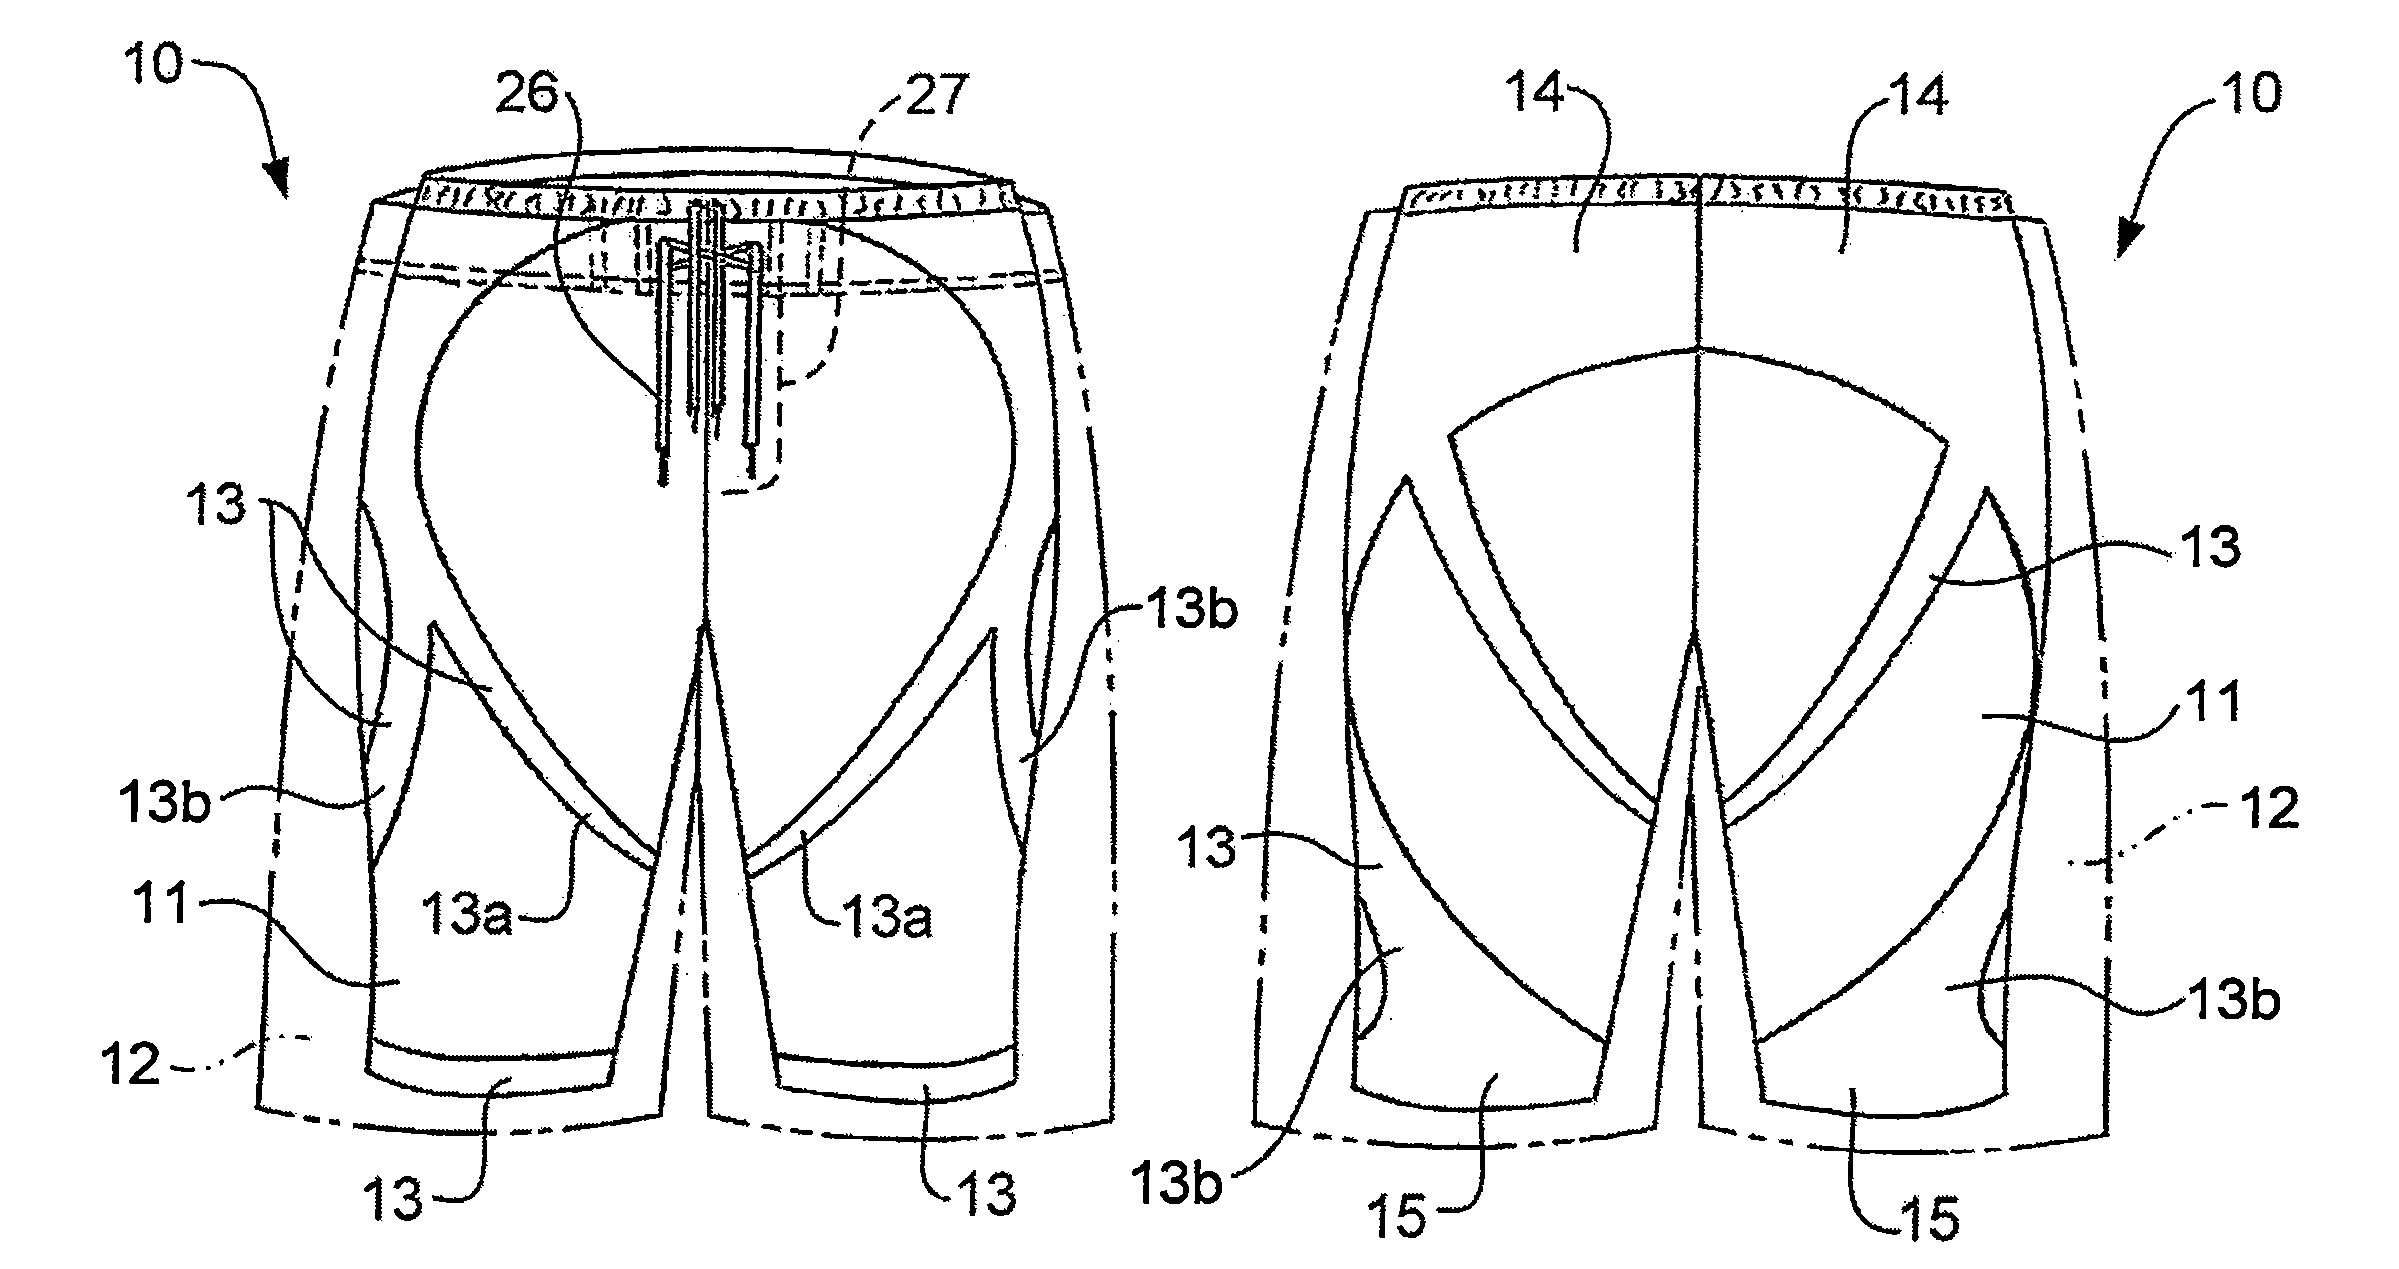 Technical garment